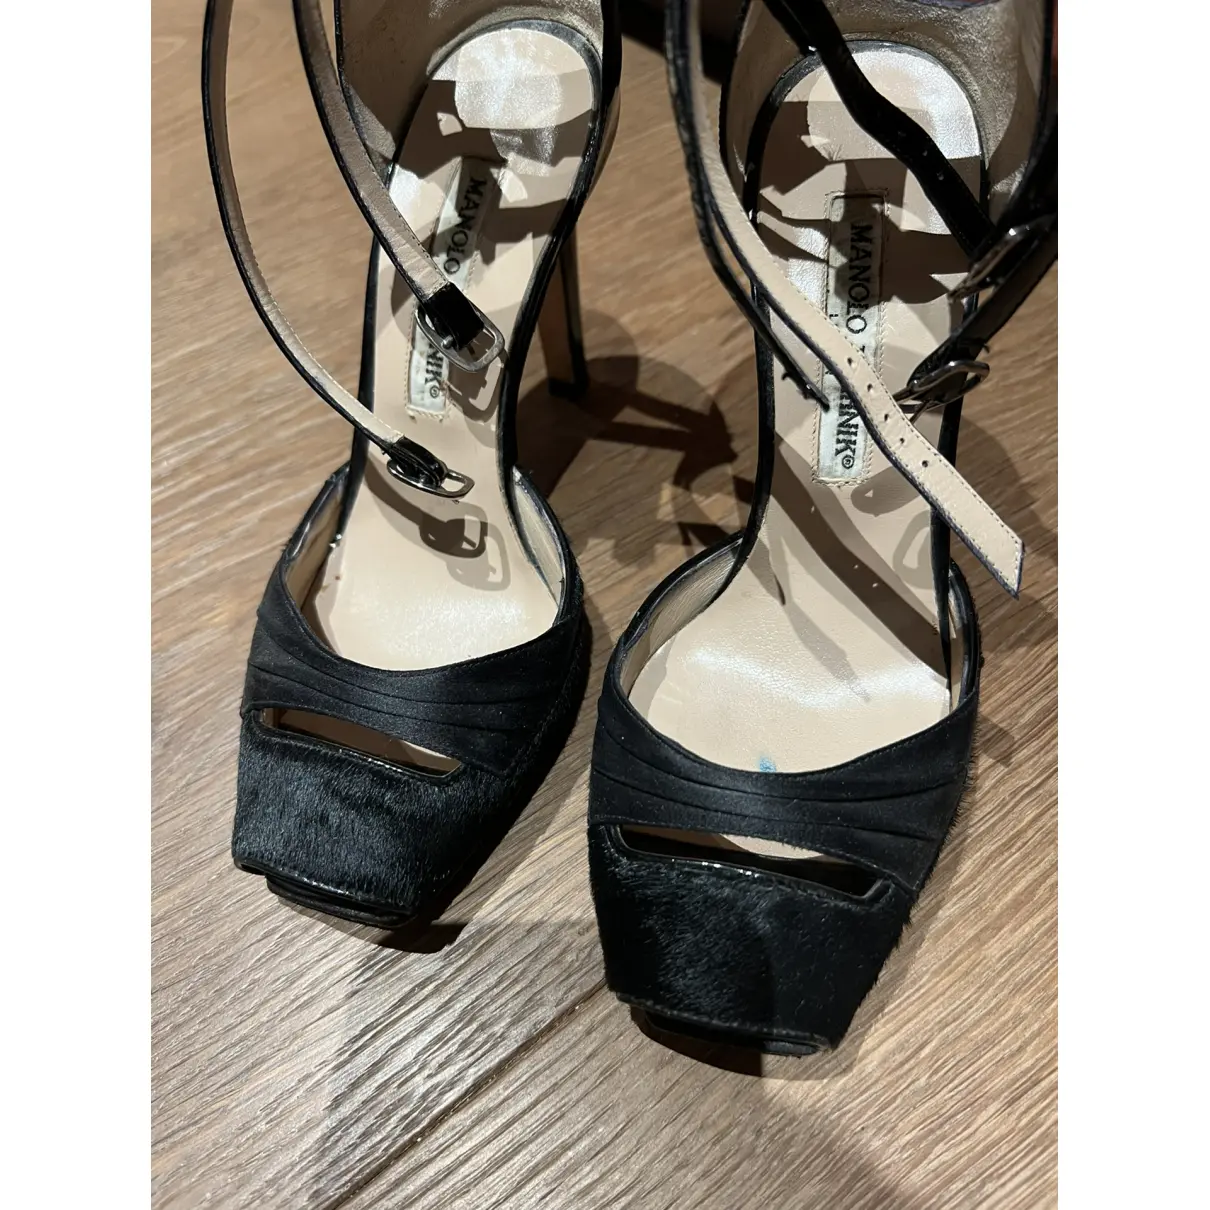 Patent leather heels Manolo Blahnik - Vintage